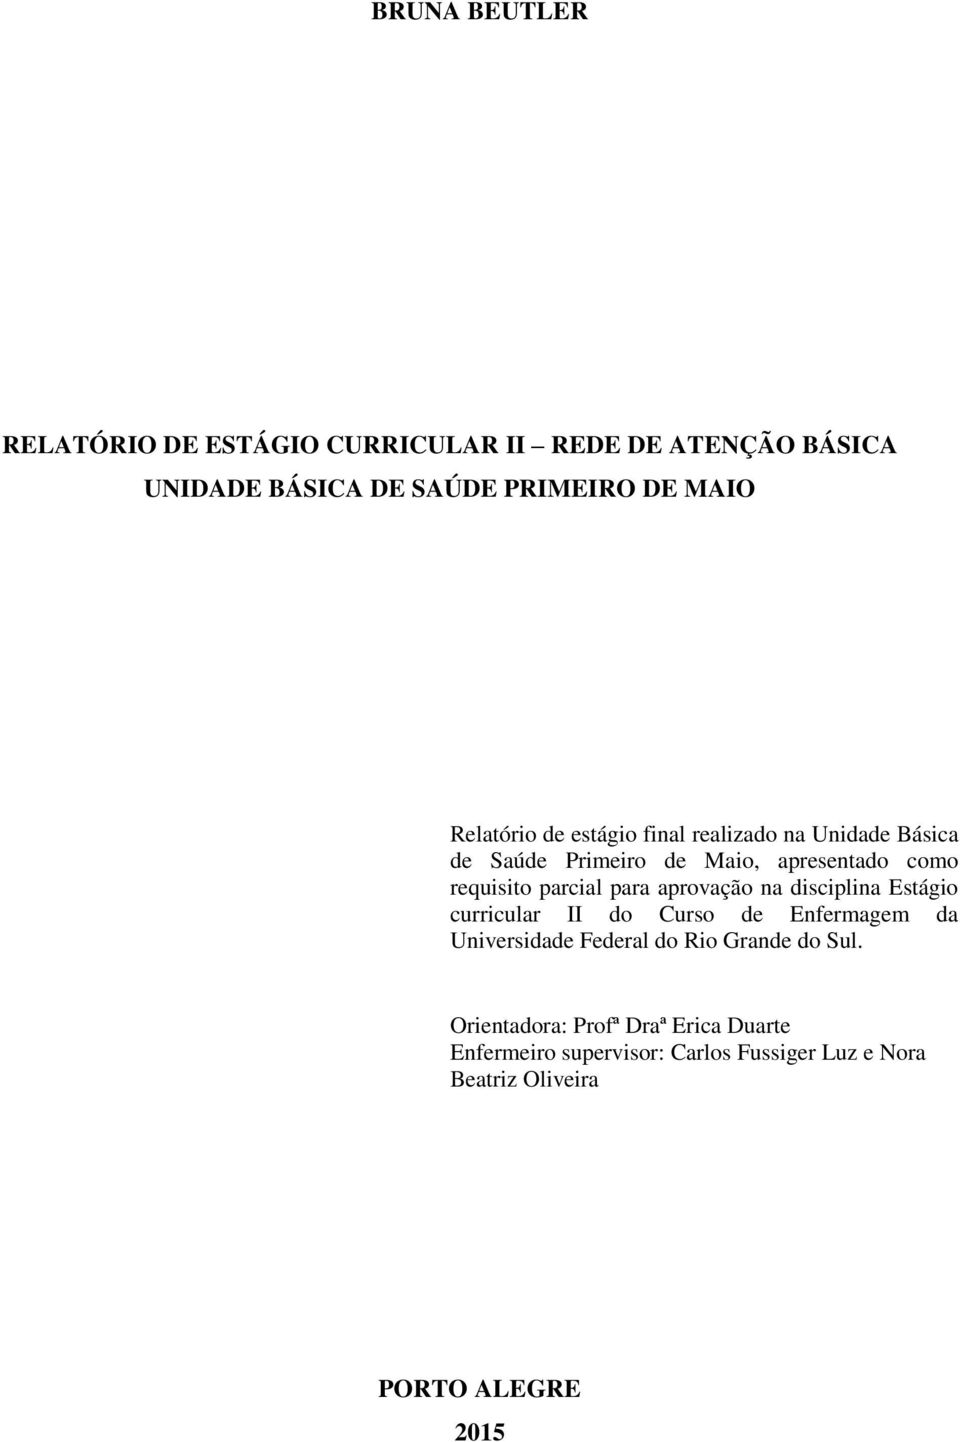 para aprovação na disciplina Estágio curricular II do Curso de Enfermagem da Universidade Federal do Rio Grande do Sul.